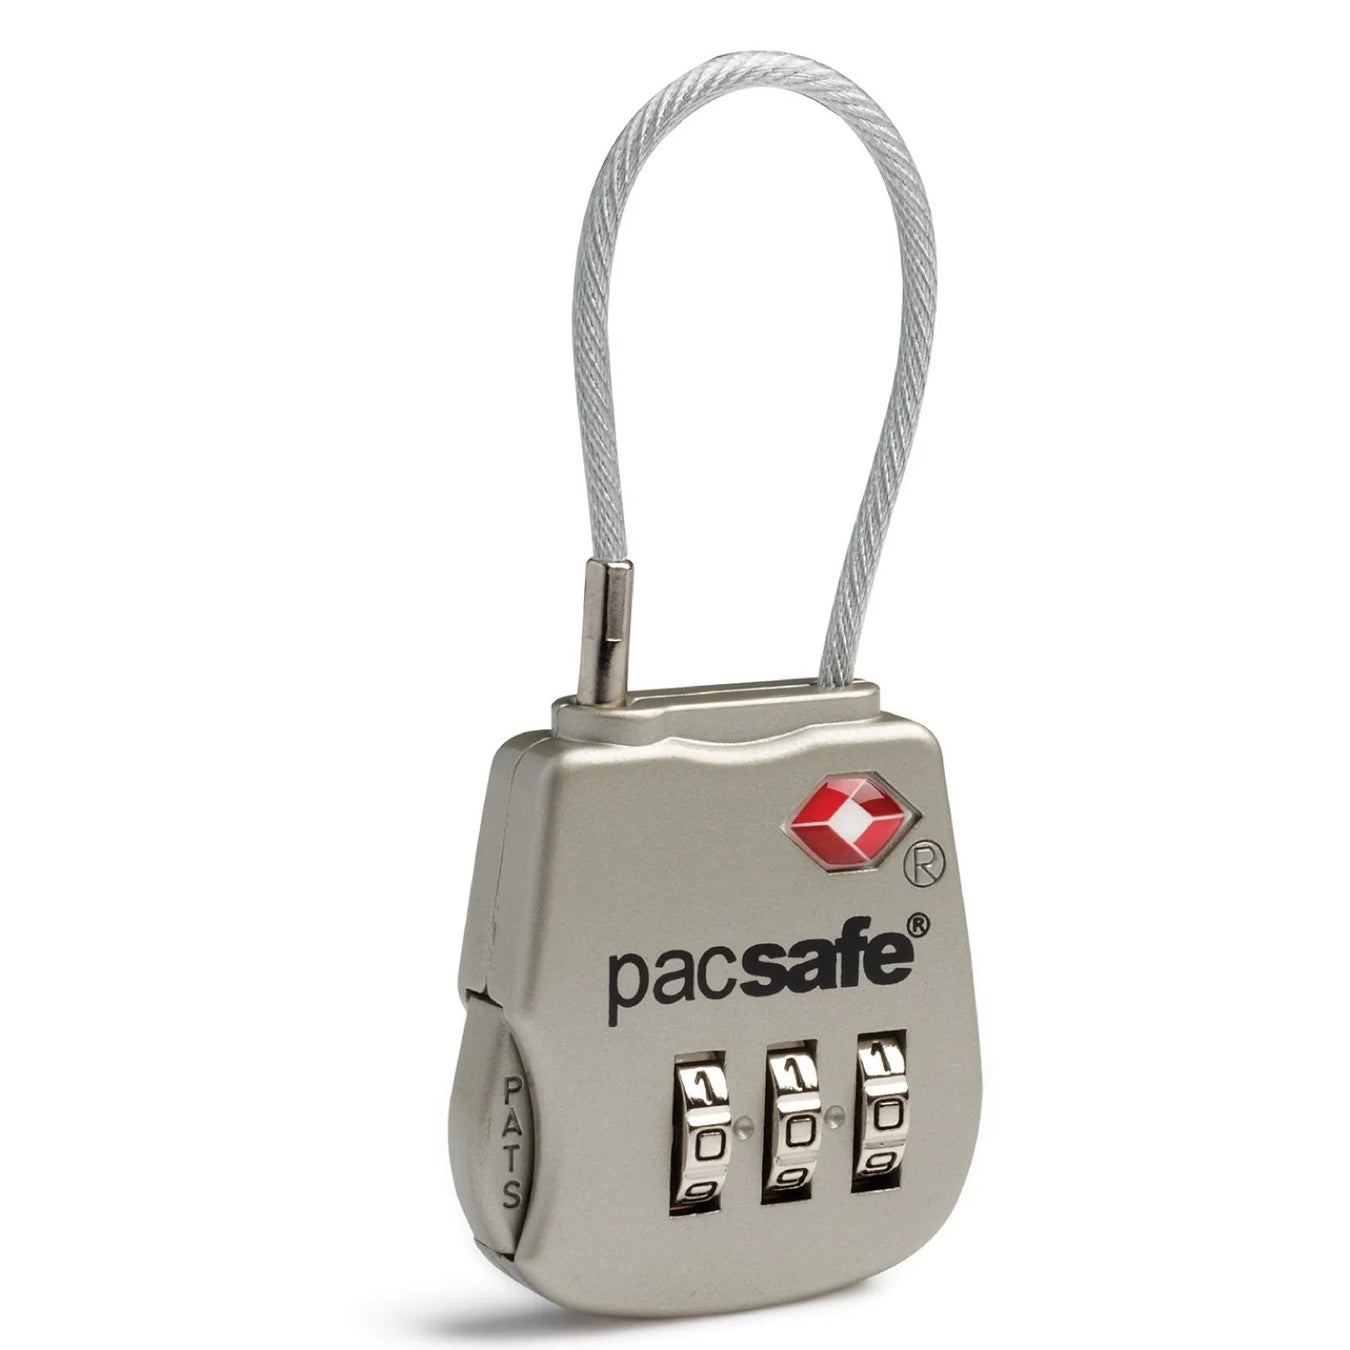 Pacsafe's TSA Locks